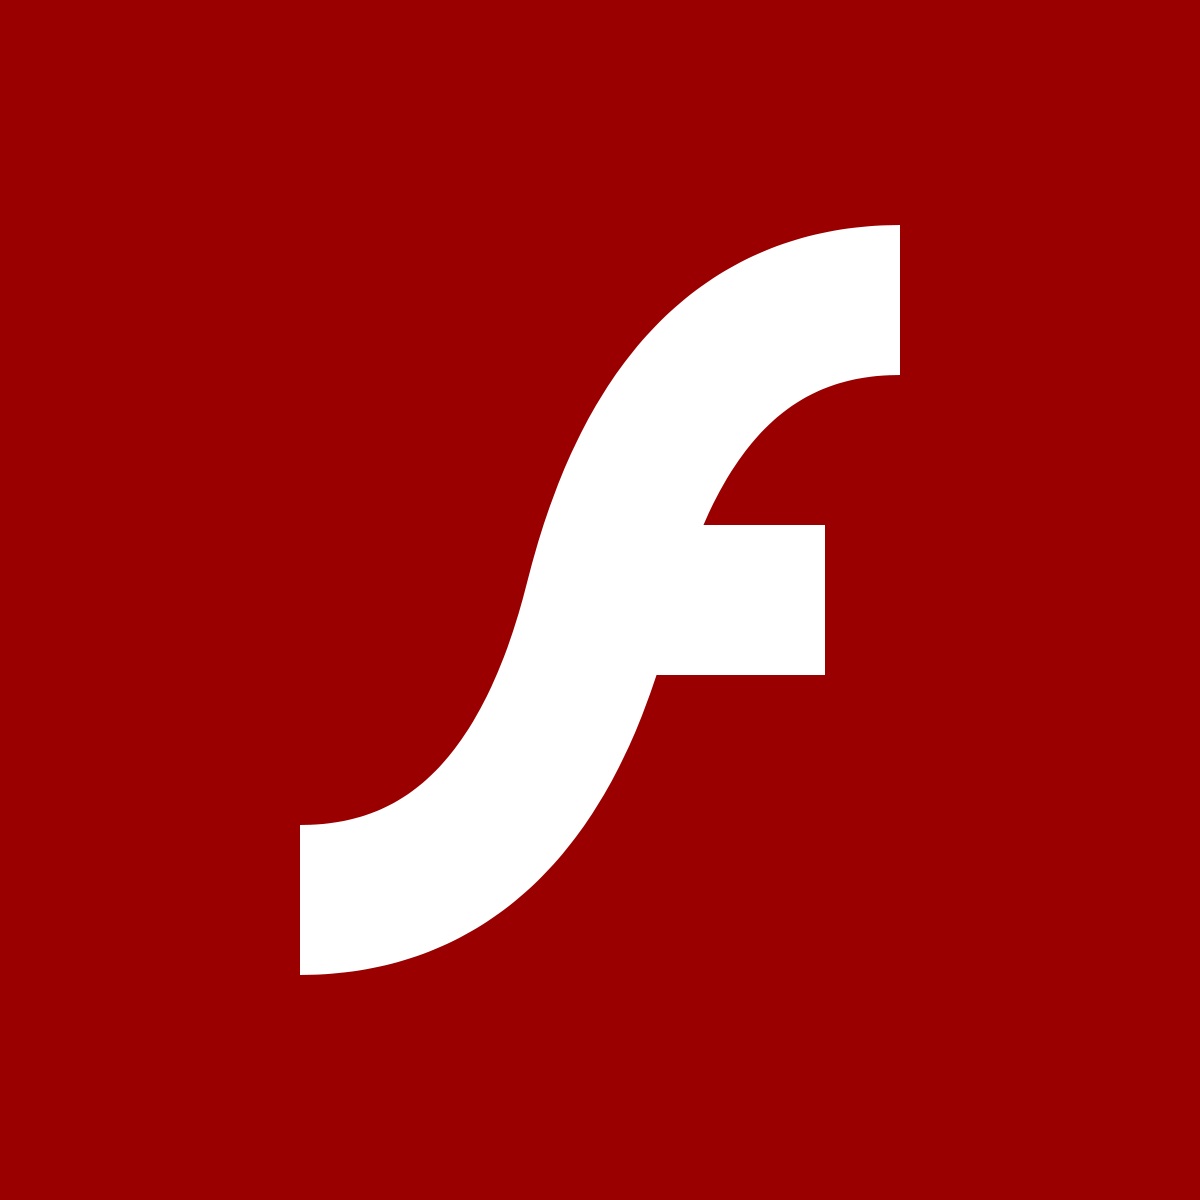 Win10 21H1将删除Flash Player 7月将通过星期二补丁彻底删除”